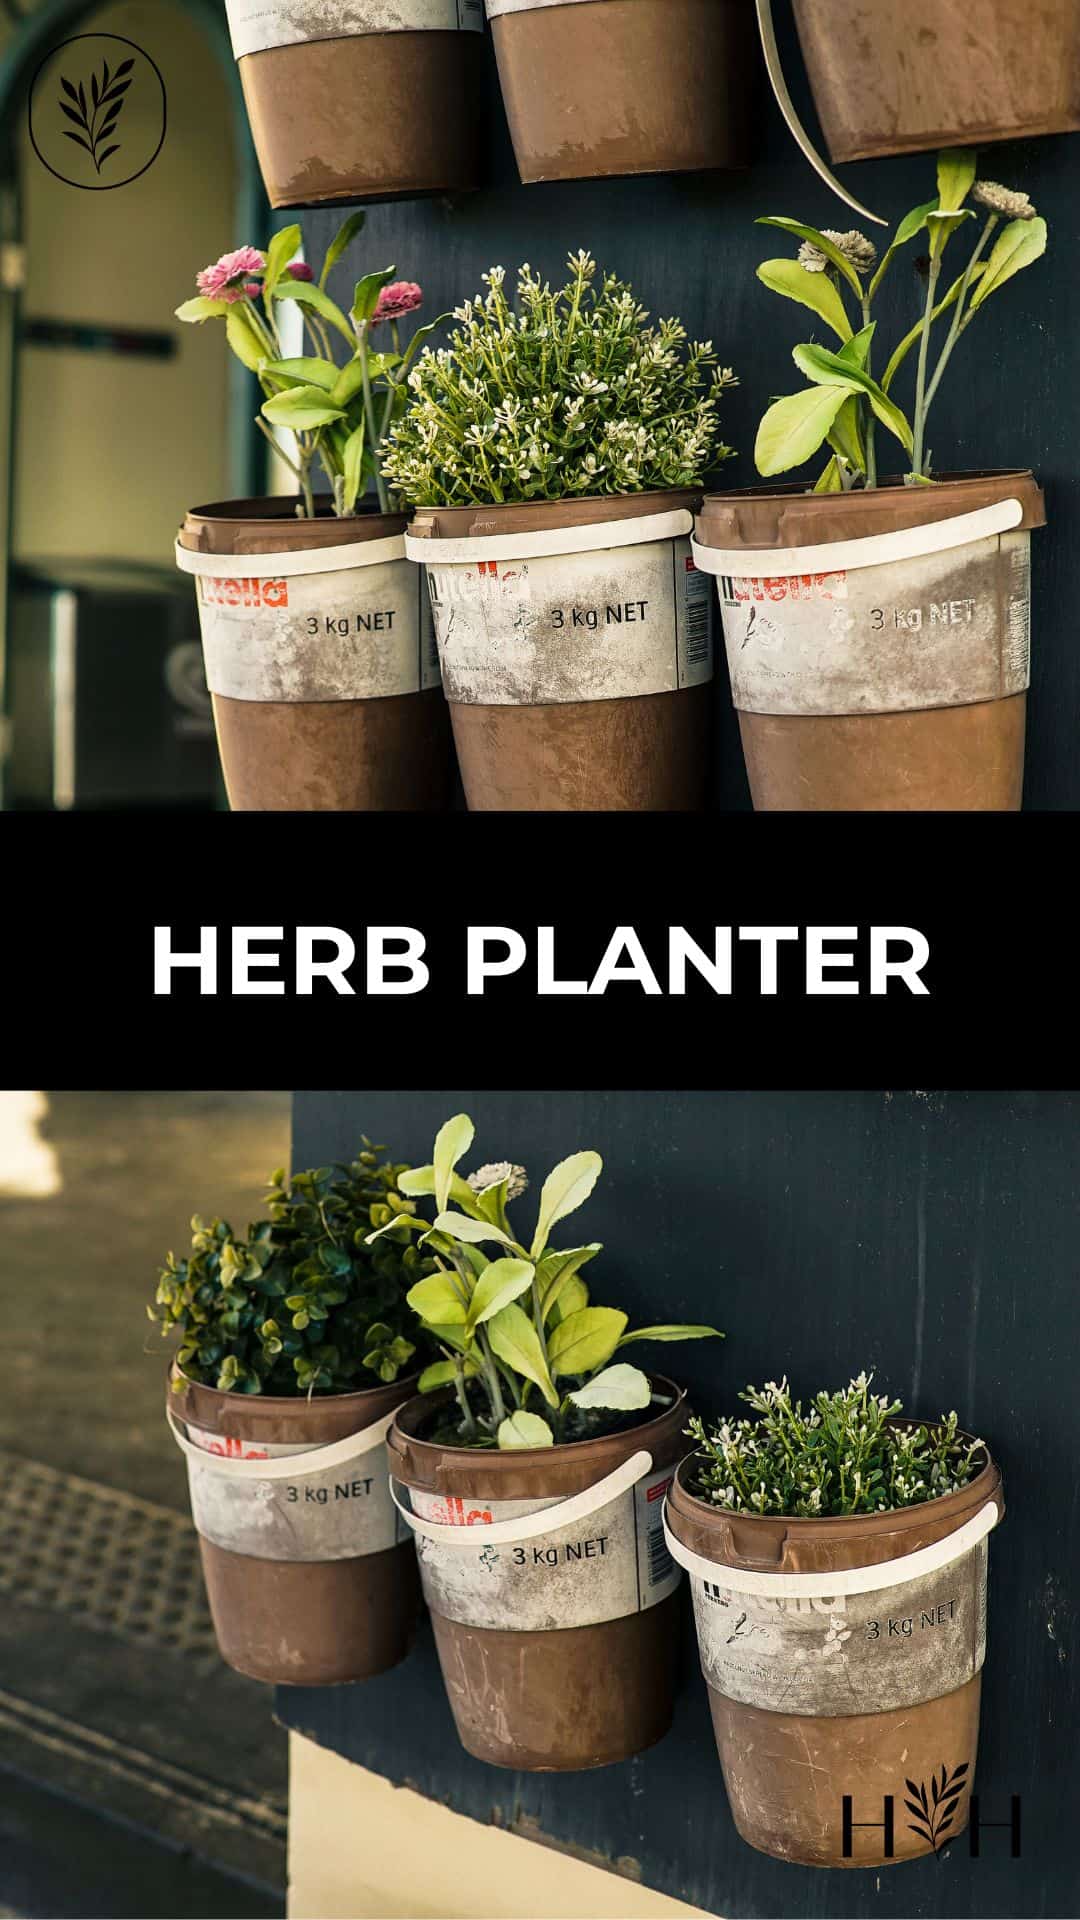 Herb planter via @home4theharvest